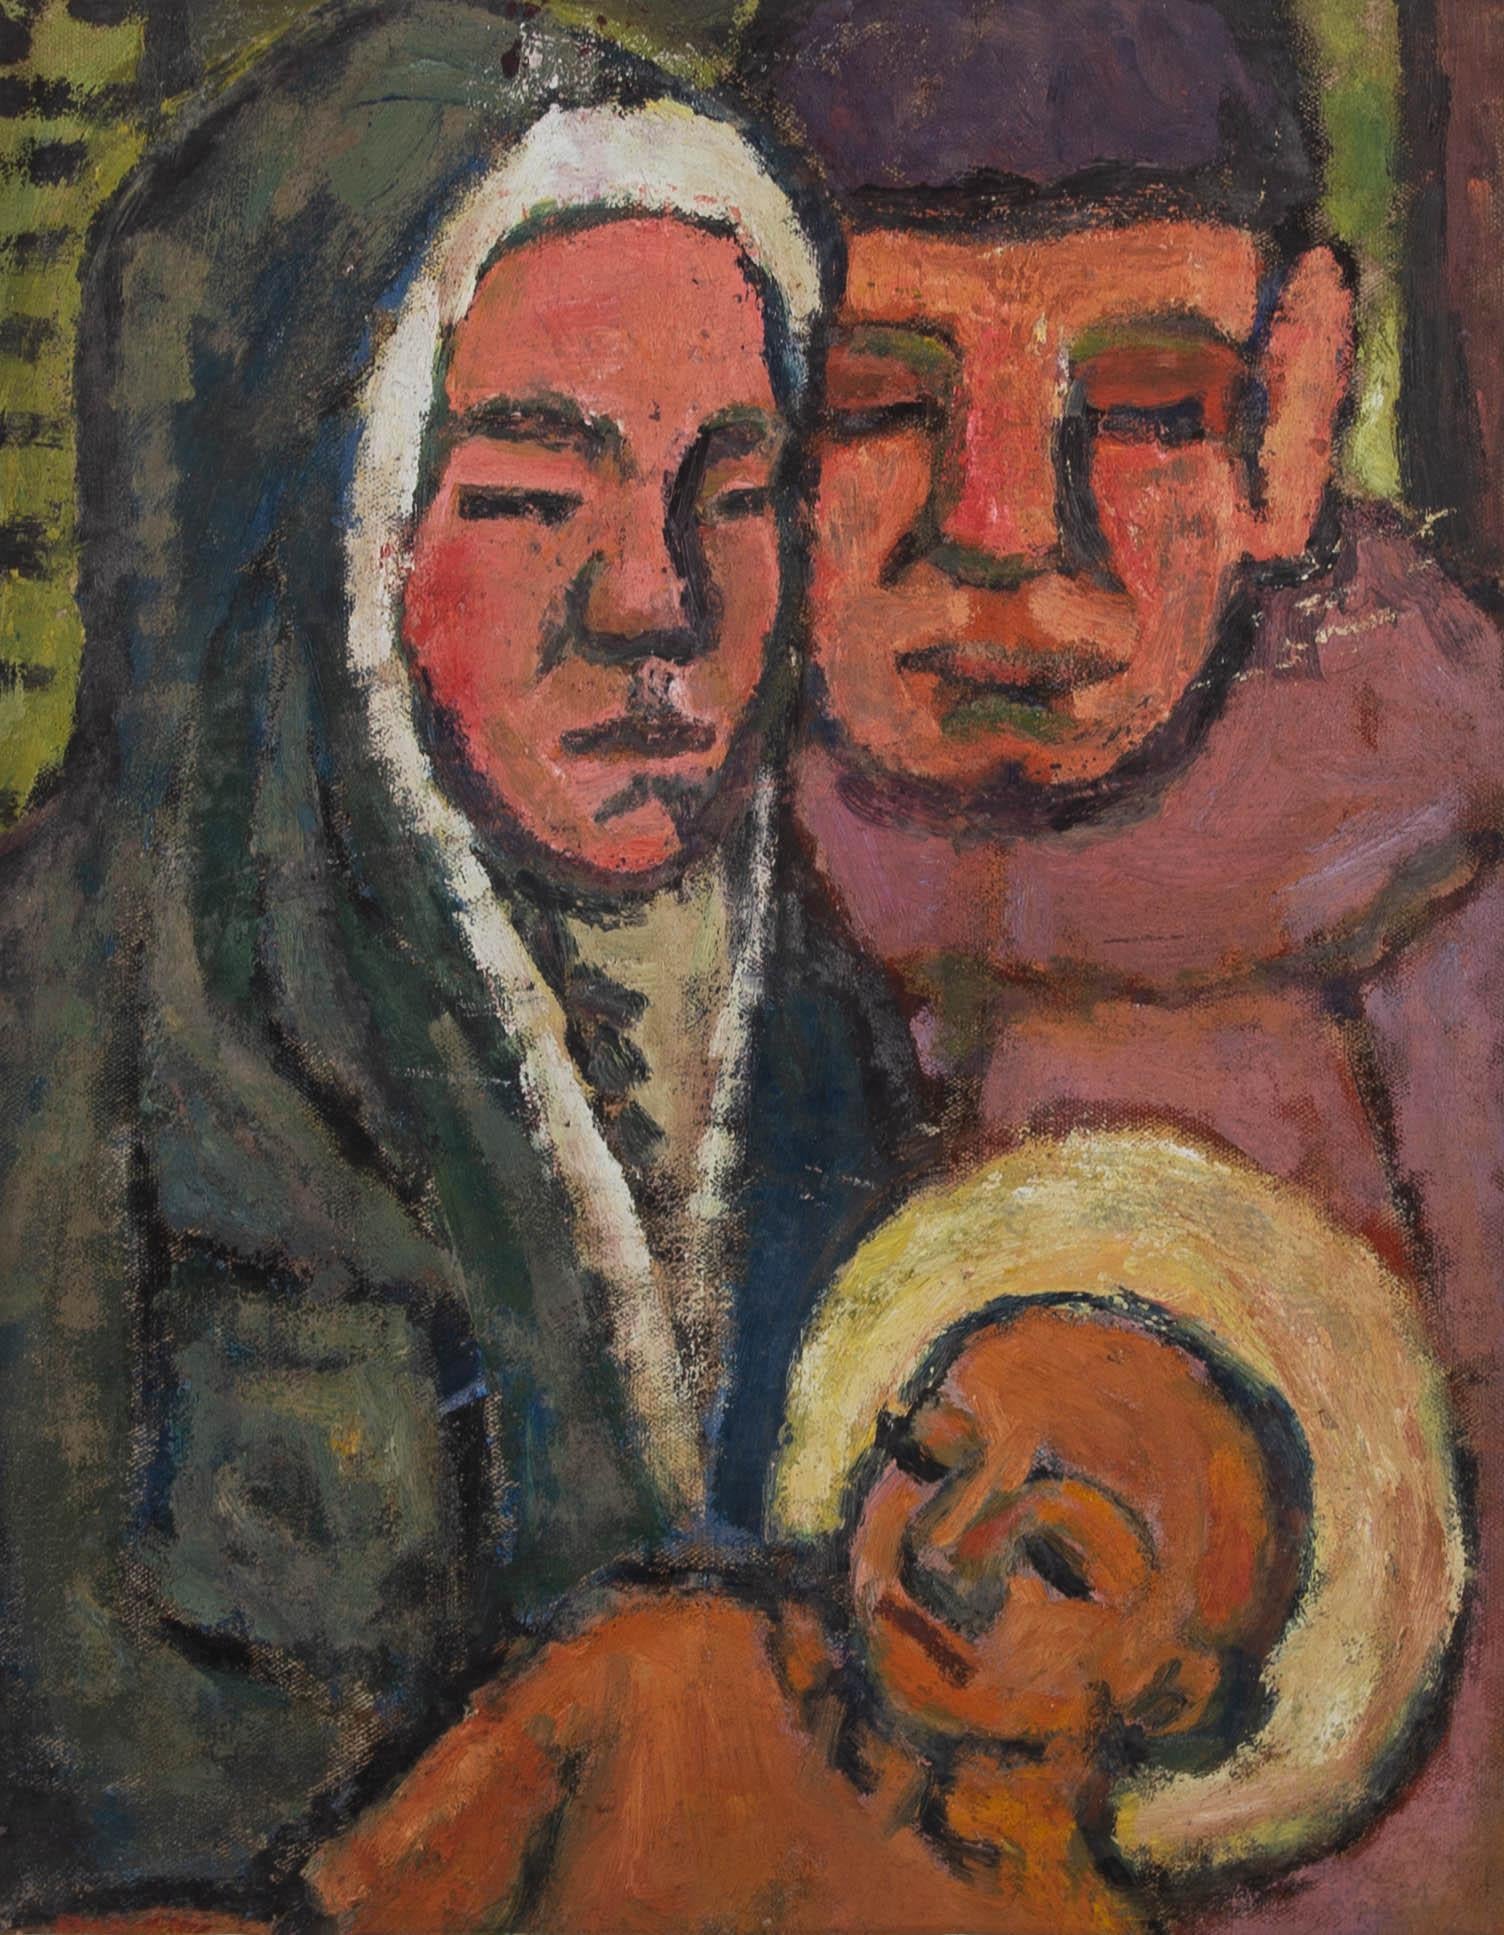 Ein schönes und warmes Familienporträt von Maria, Josef und dem Jesuskind. Der Künstler hat einfache Formen und erdige Farben verwendet, um der geheiligten Familie ein Element der Demut und Erdverbundenheit zu verleihen.

Das Gemälde ist auf